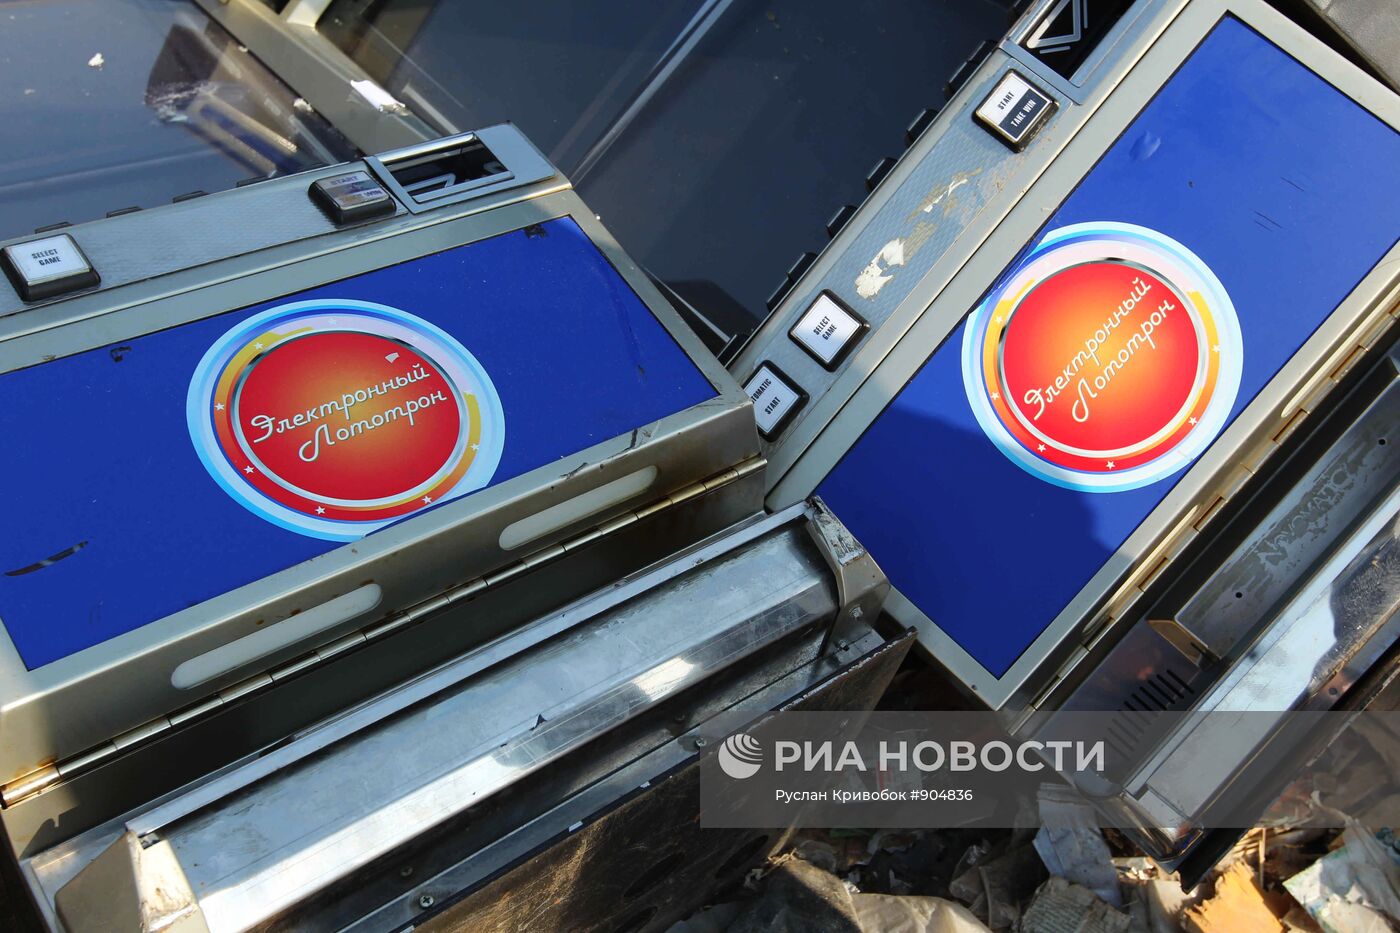 Уничтожение игровых автоматов в Московской области